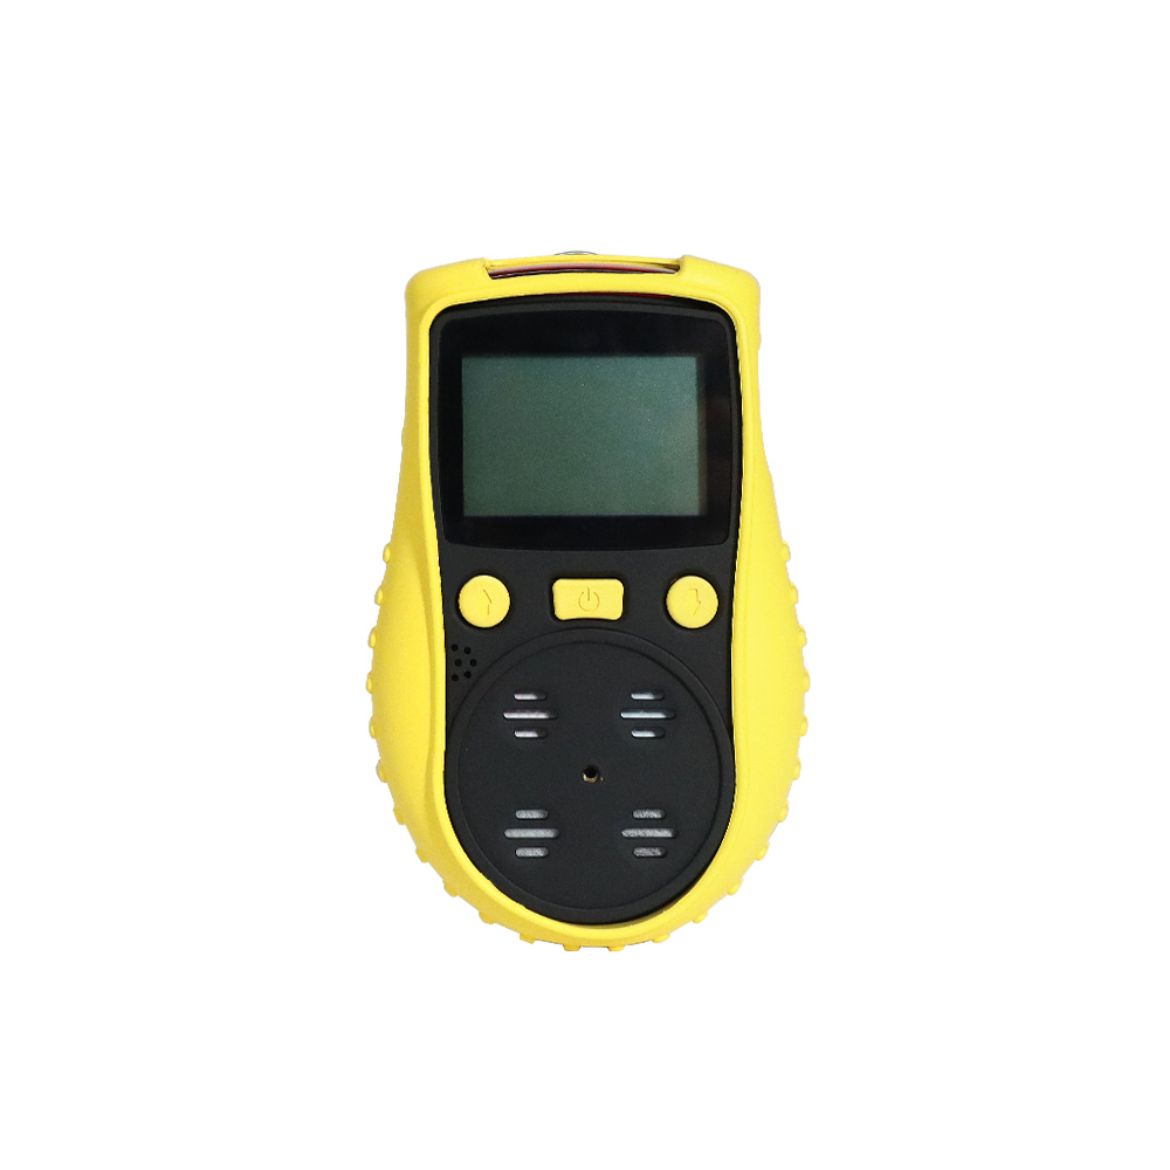 Handheld Carbon Monoxide (CO) Gas Detector